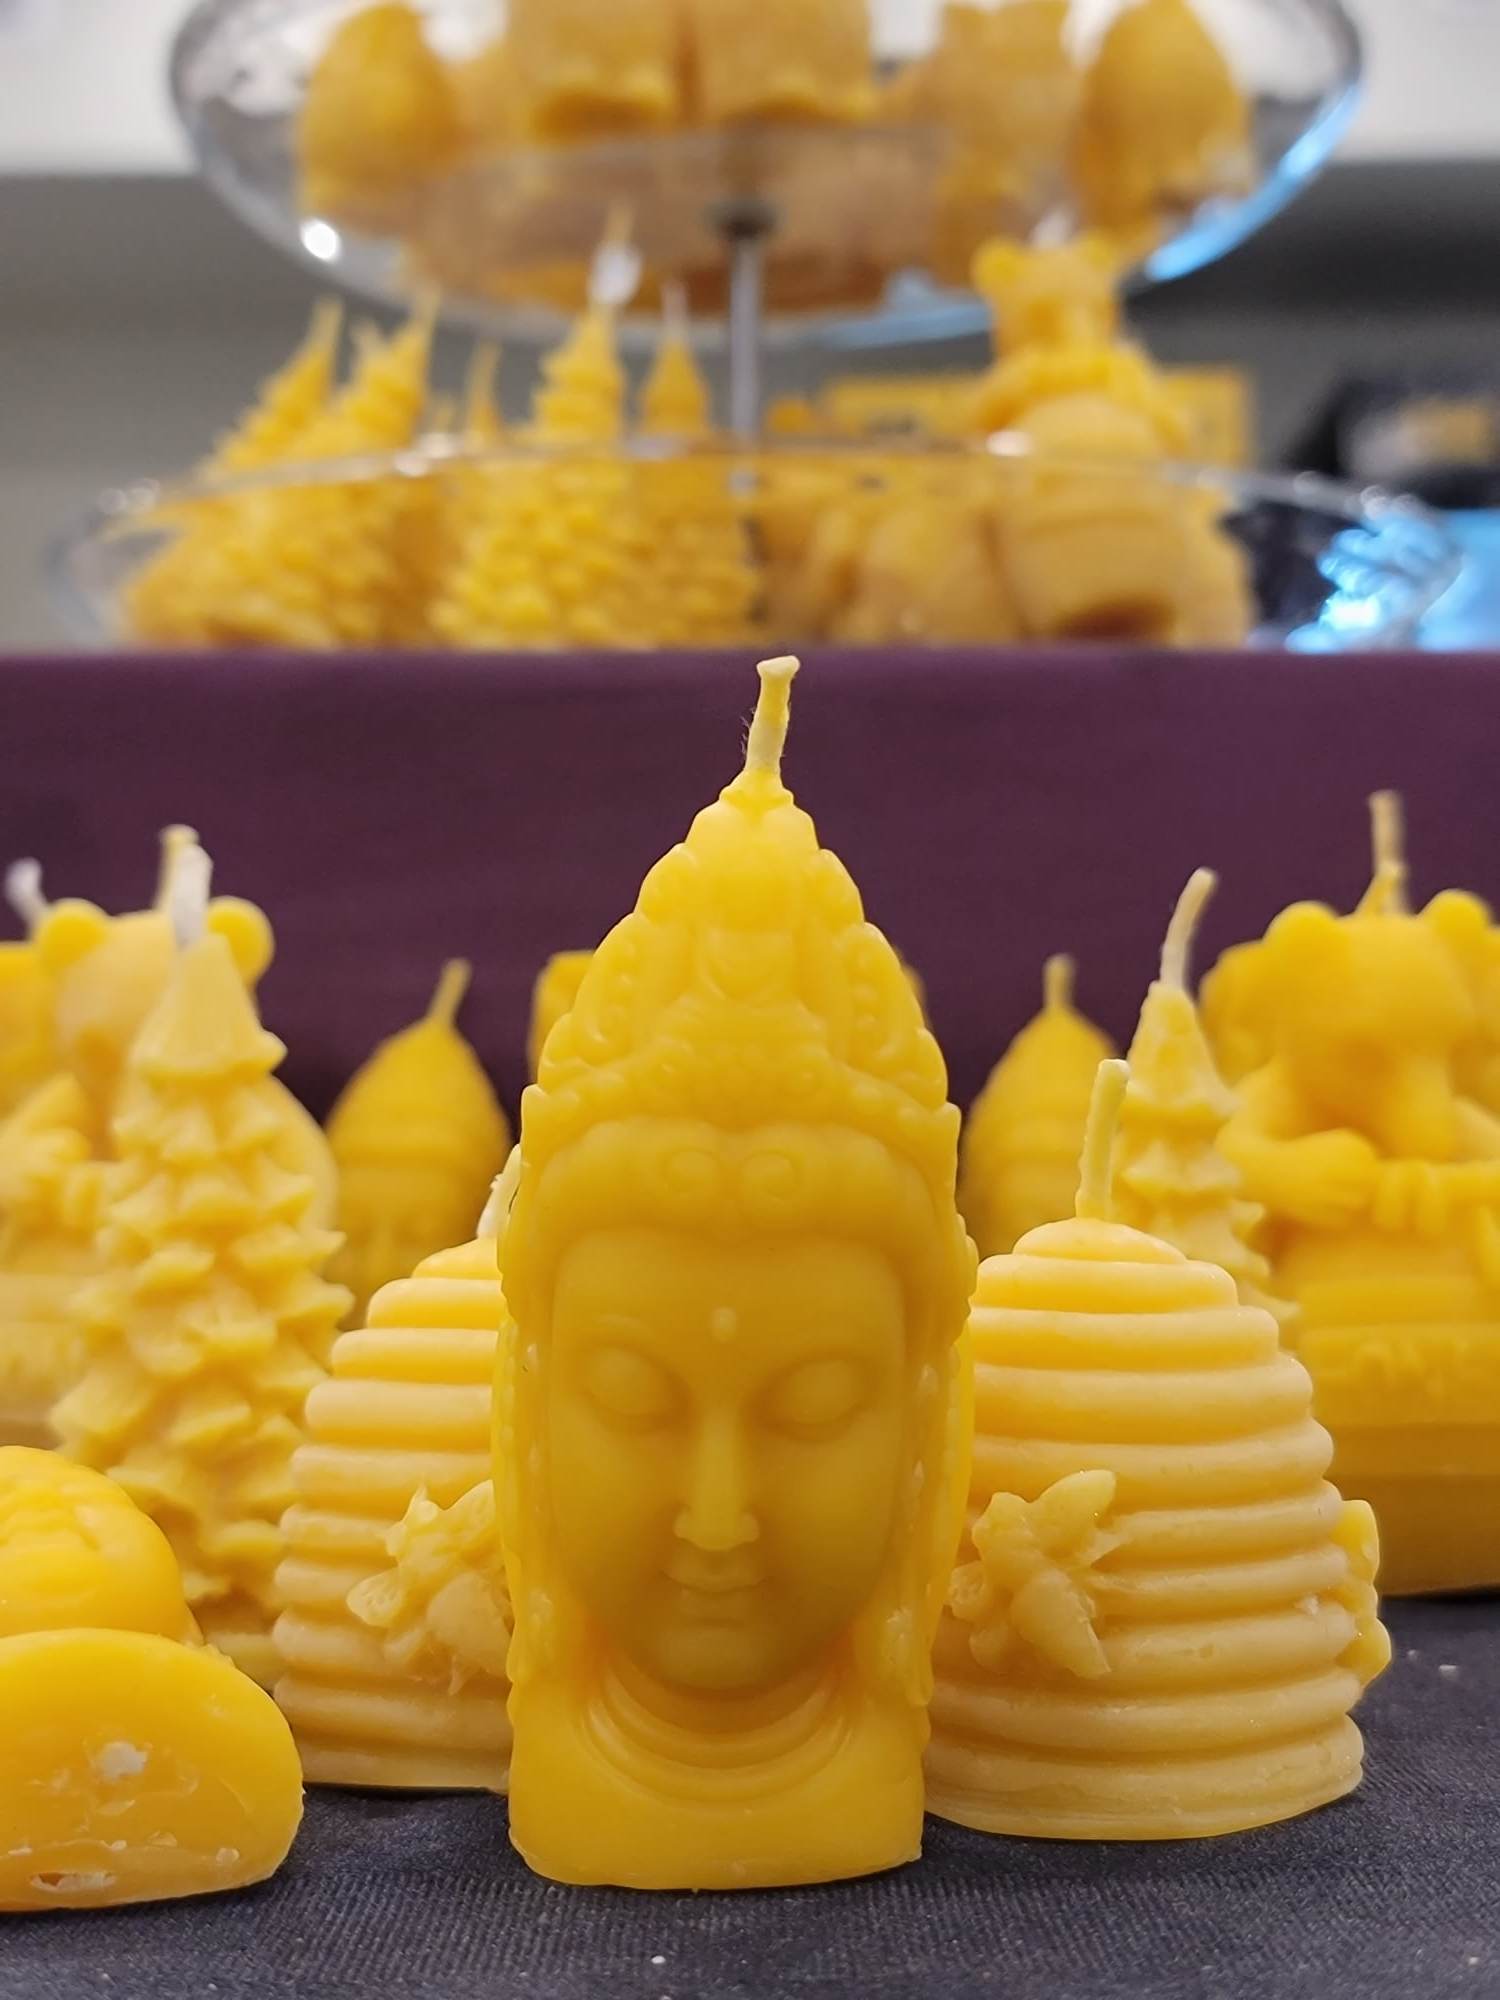 Une chandelle jaune en forme de tête de la déesse Shiva devant plusieurs autres modèles de chandelles jaunes.